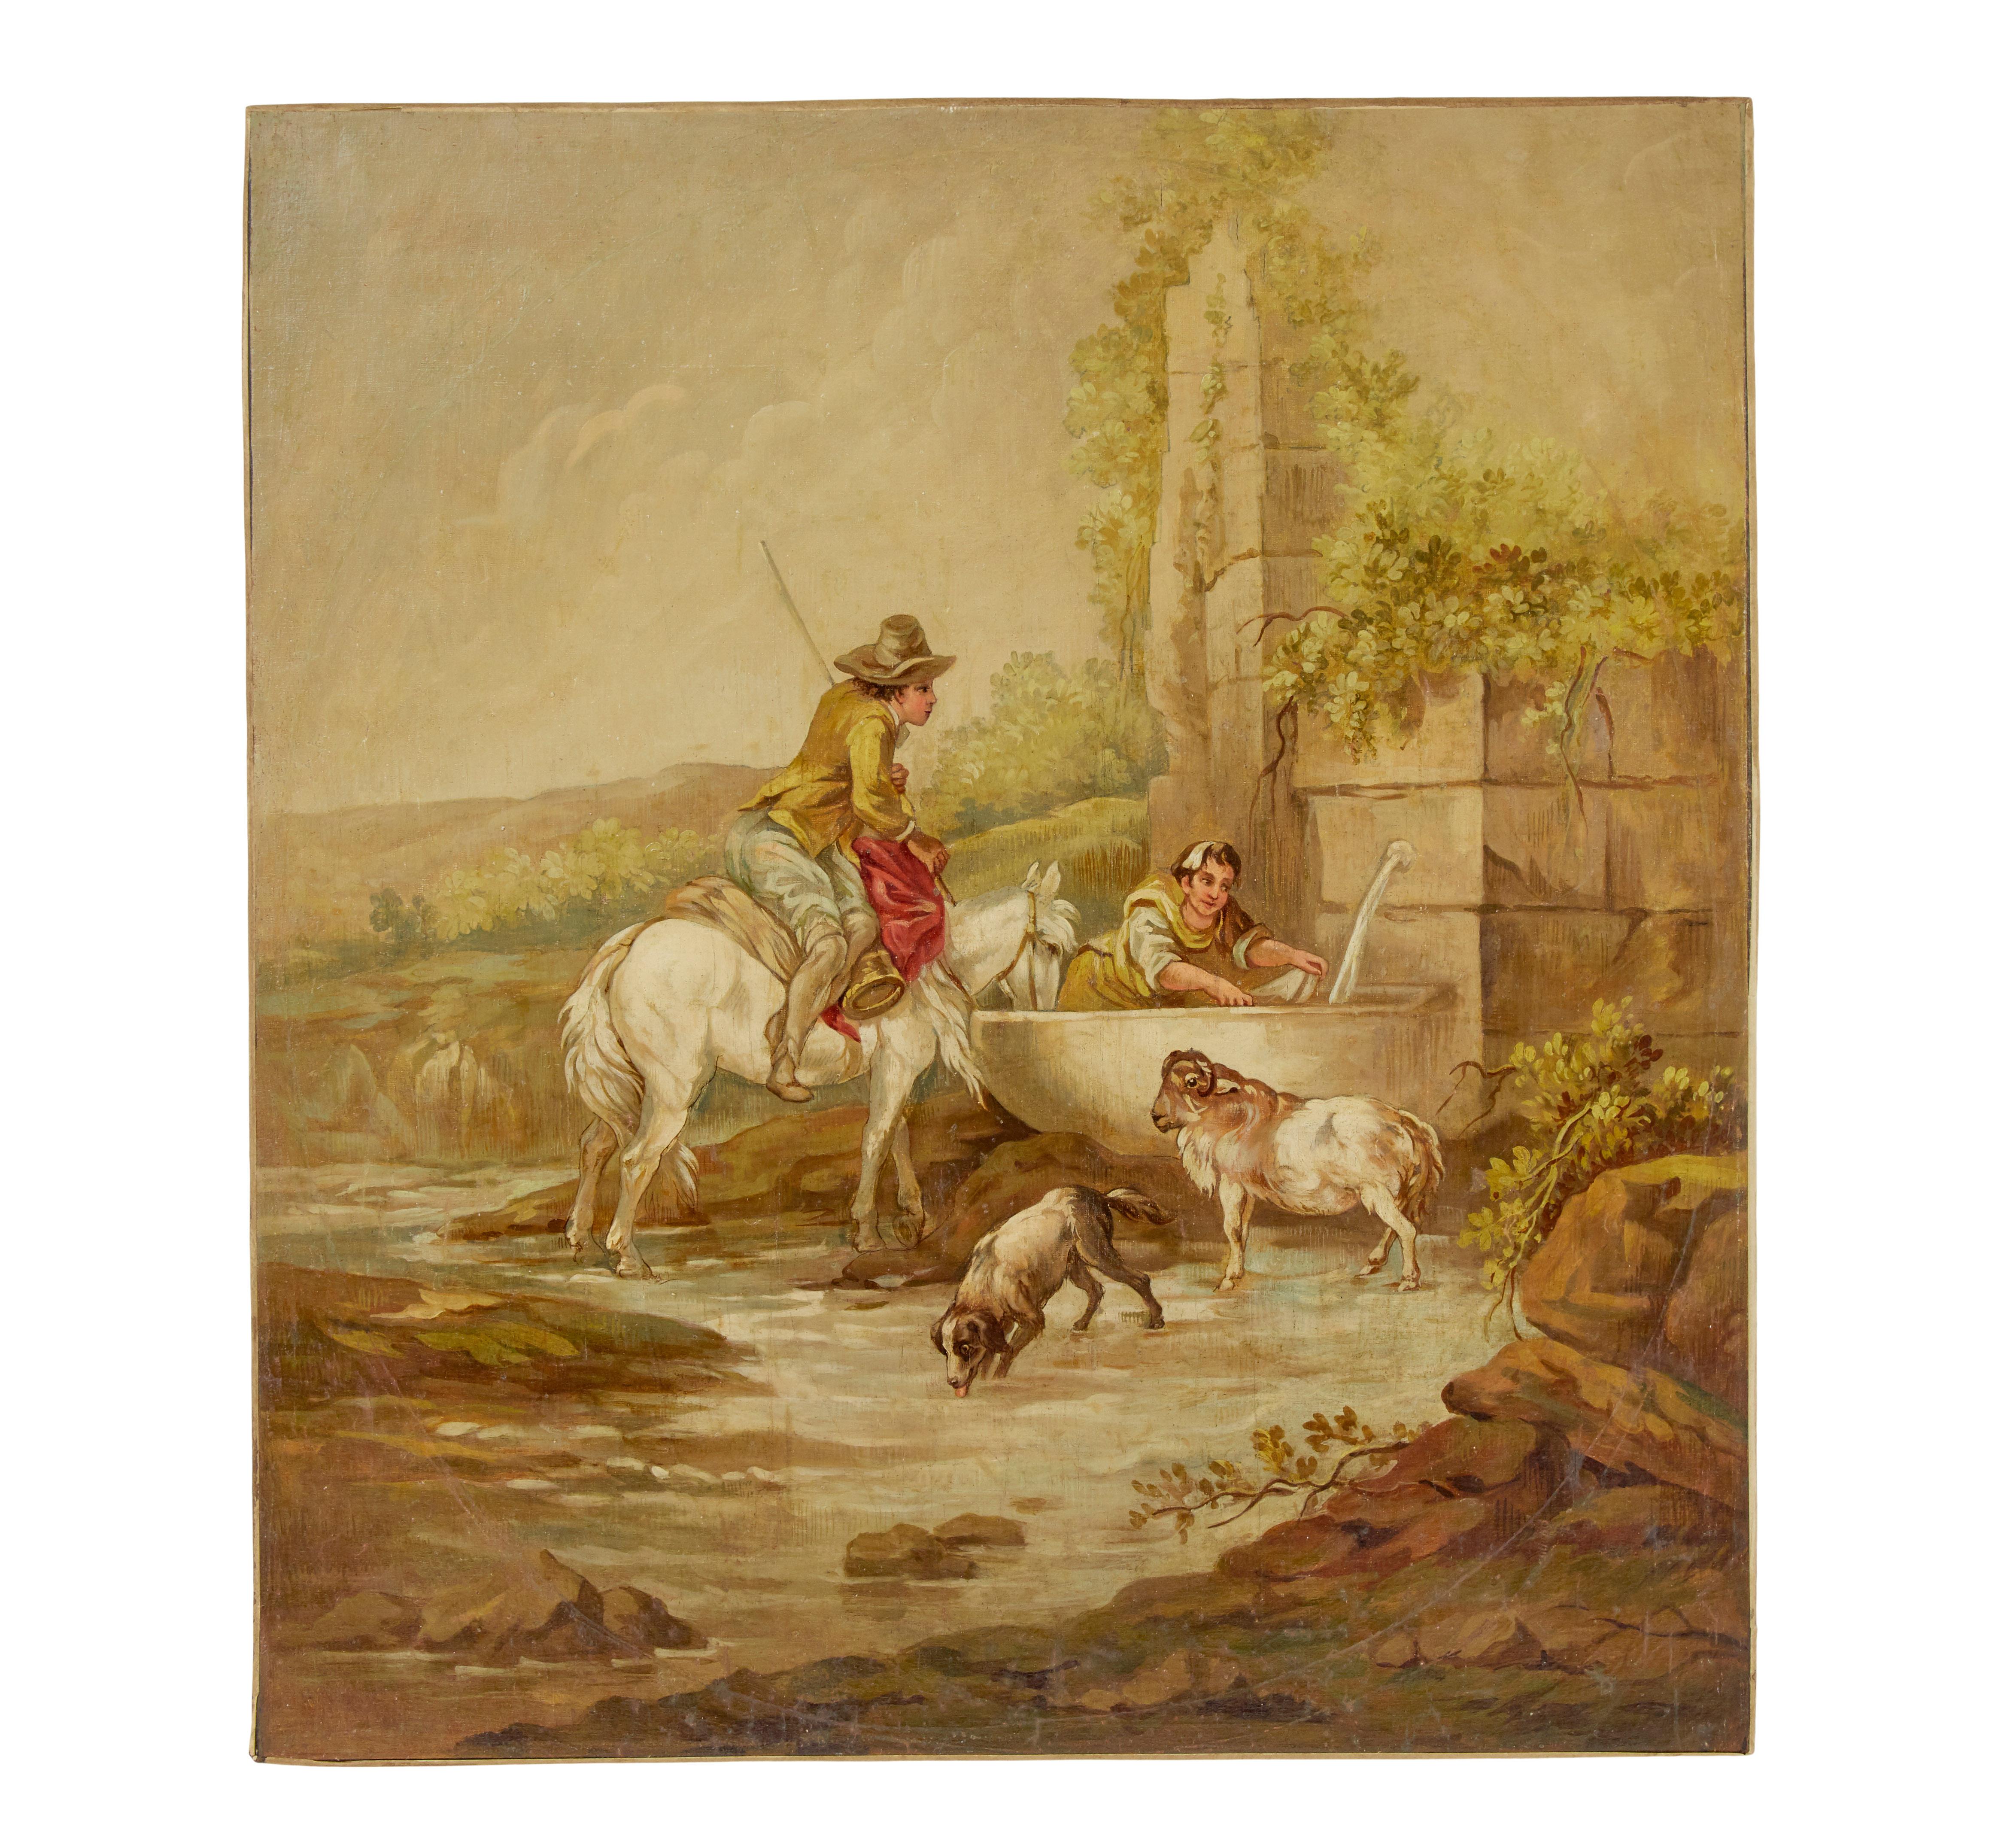 Paar ländliche Gemälde in Öl auf Leinwand aus dem späten 19. Jahrhundert, 1895.

Zwei ungerahmte und unsignierte Gemälde, die möglicherweise spanischen Ursprungs sind.

Öl auf Leinwand, dekorative Gegenstände von guter Qualität.